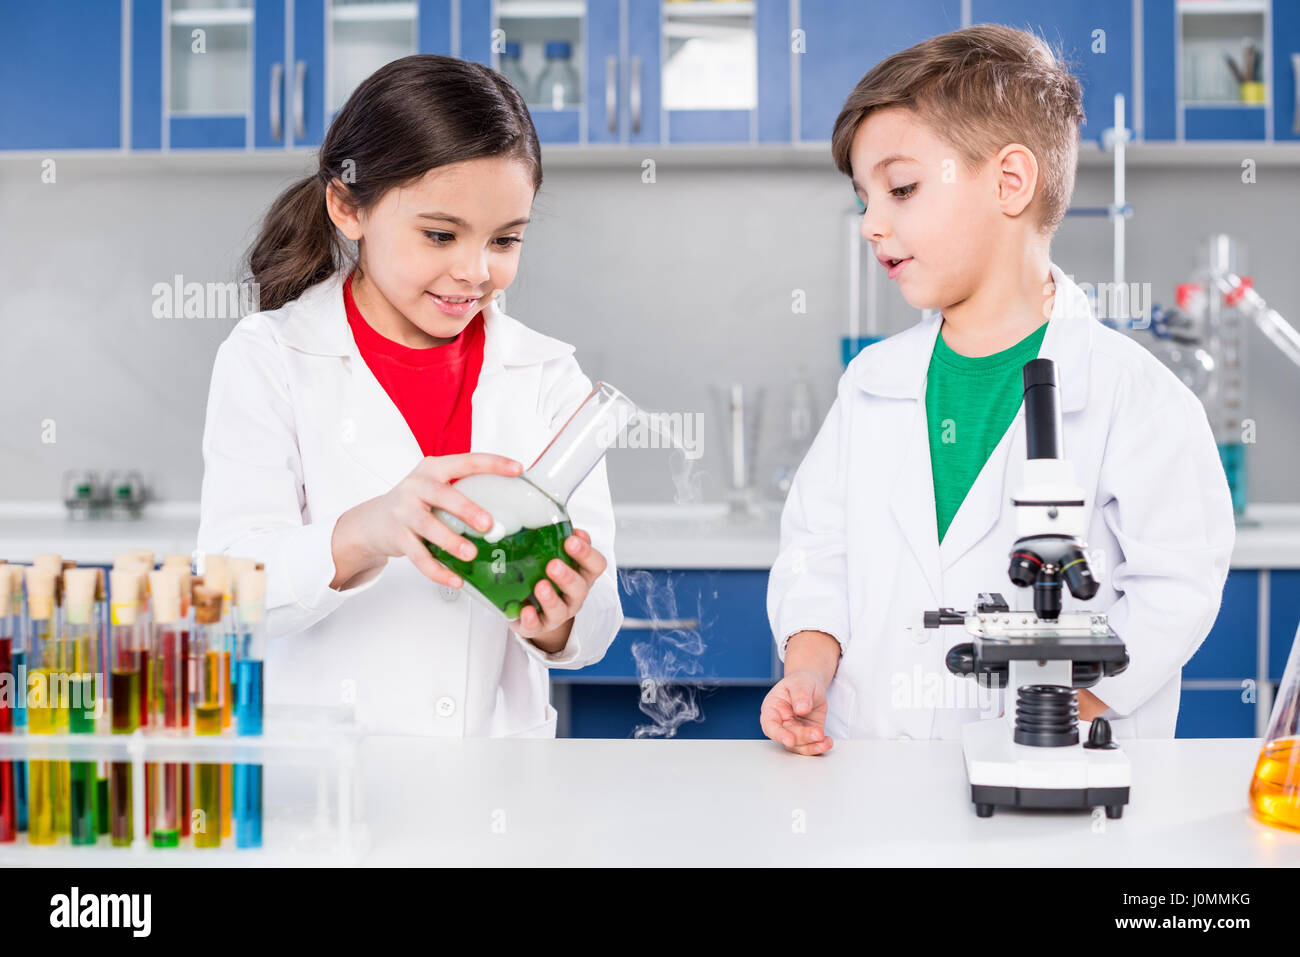 Zwei Kinder in weißen Kitteln machen chemischen experimentieren im Labor Stockfoto